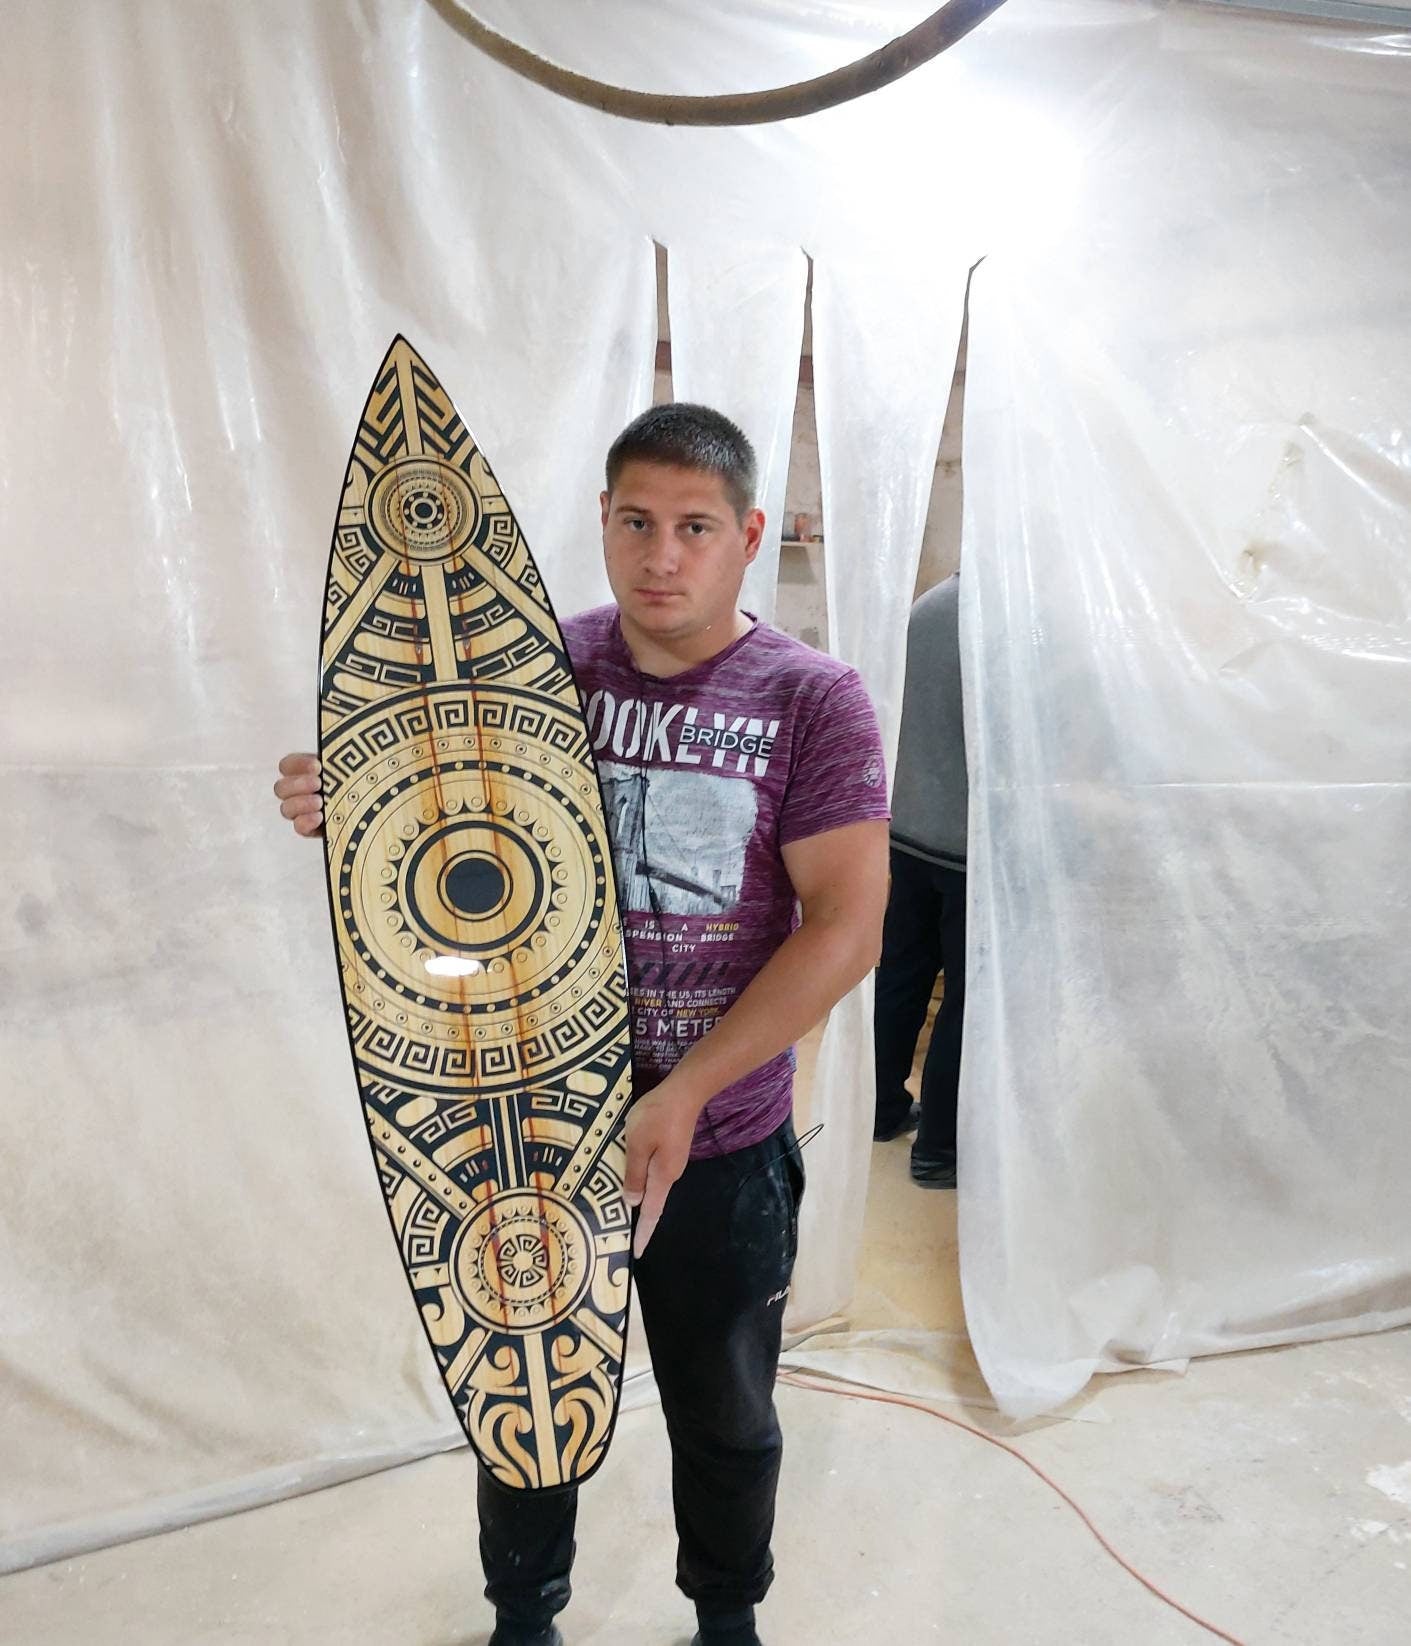 Maori Decor Surfboard Wall Art, Surfers gift, Bar Decor, Beach Decor